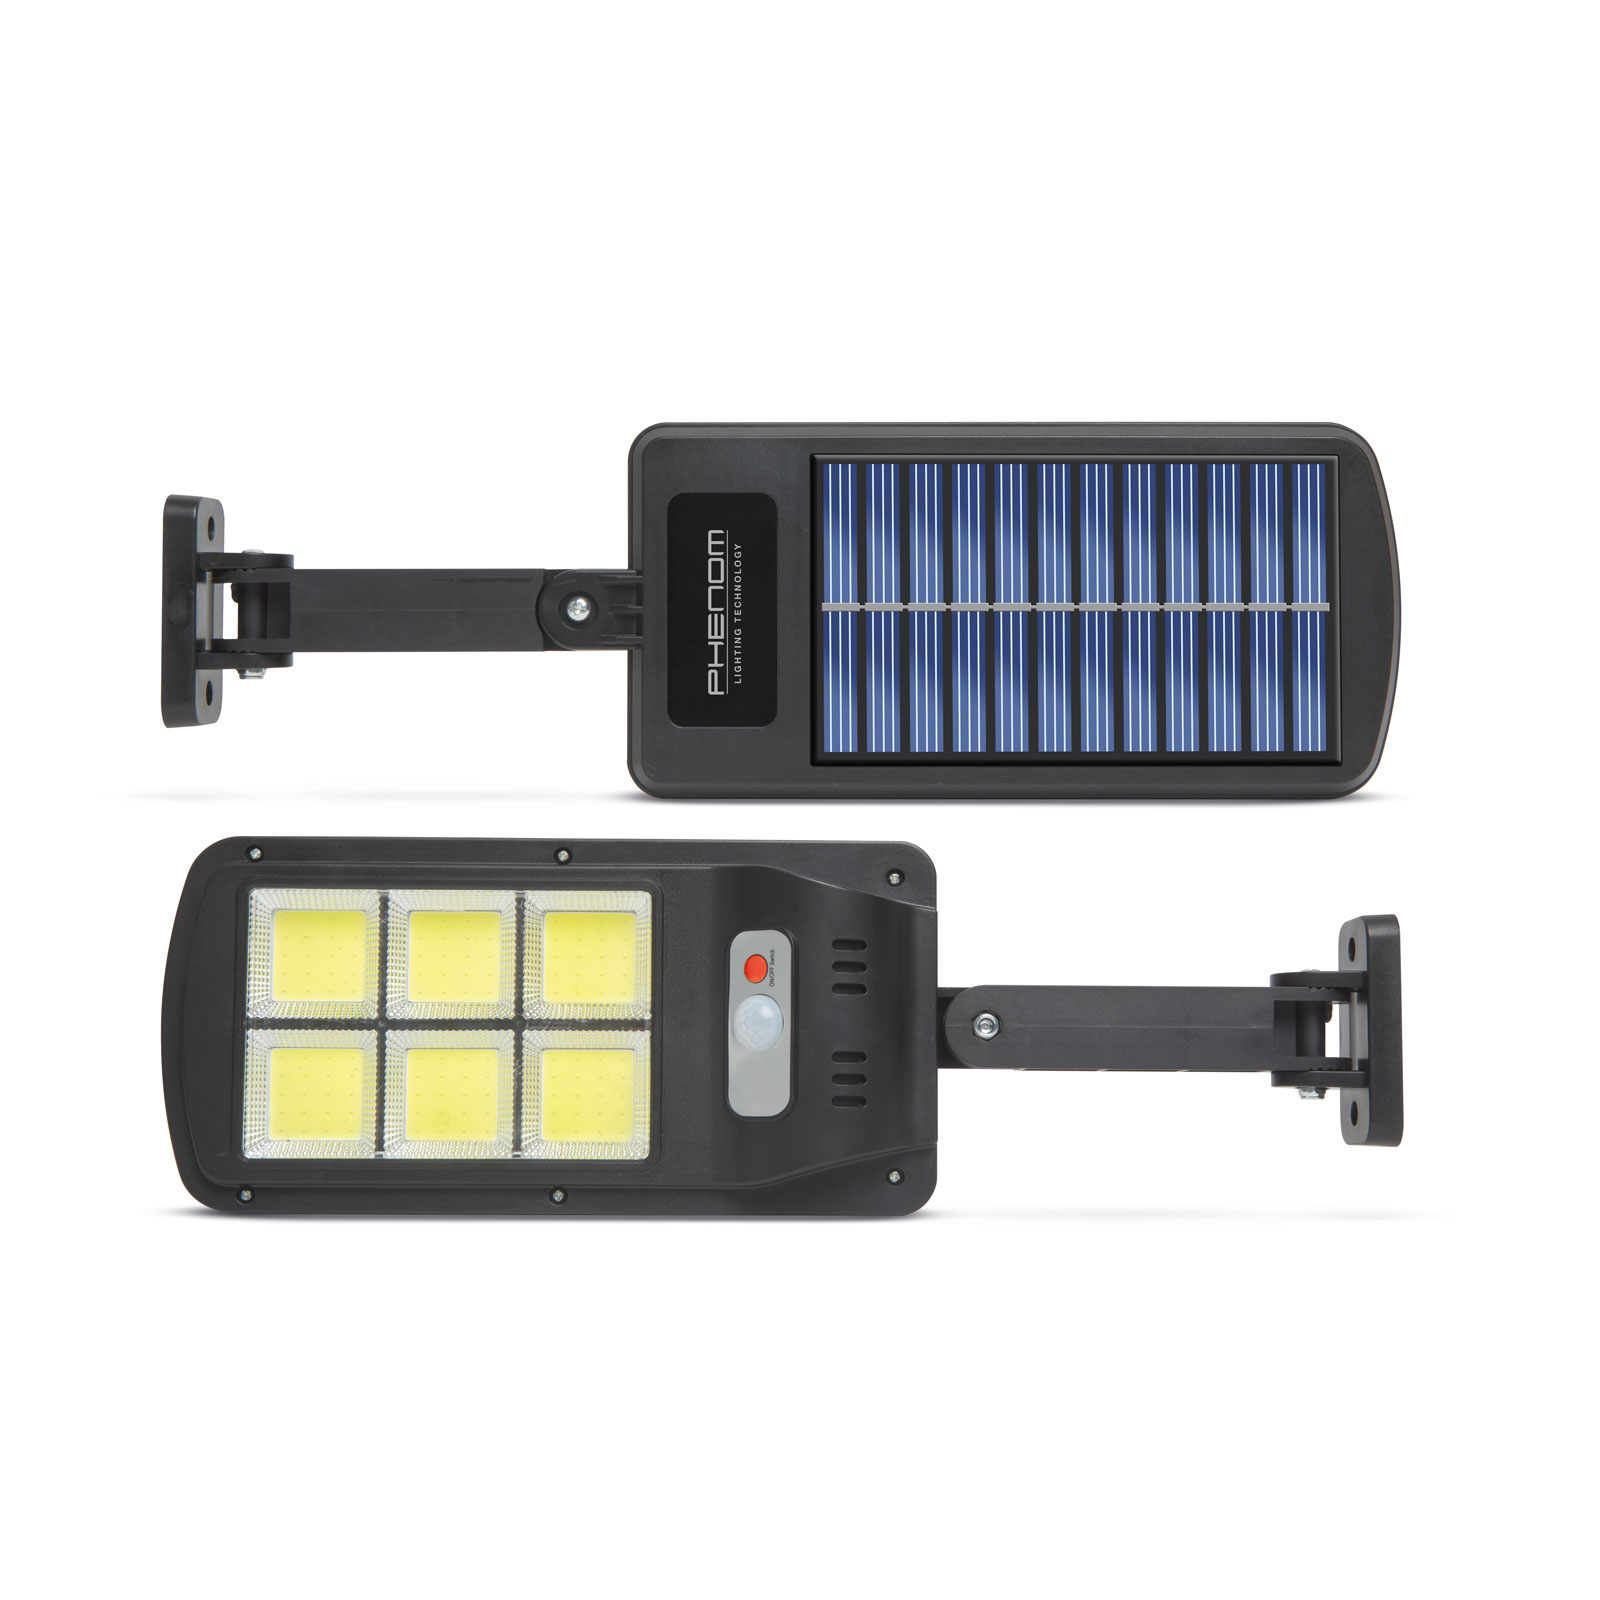 Reflector solar cu senzor de miscare - perete - 6 LED-uri Best CarHome